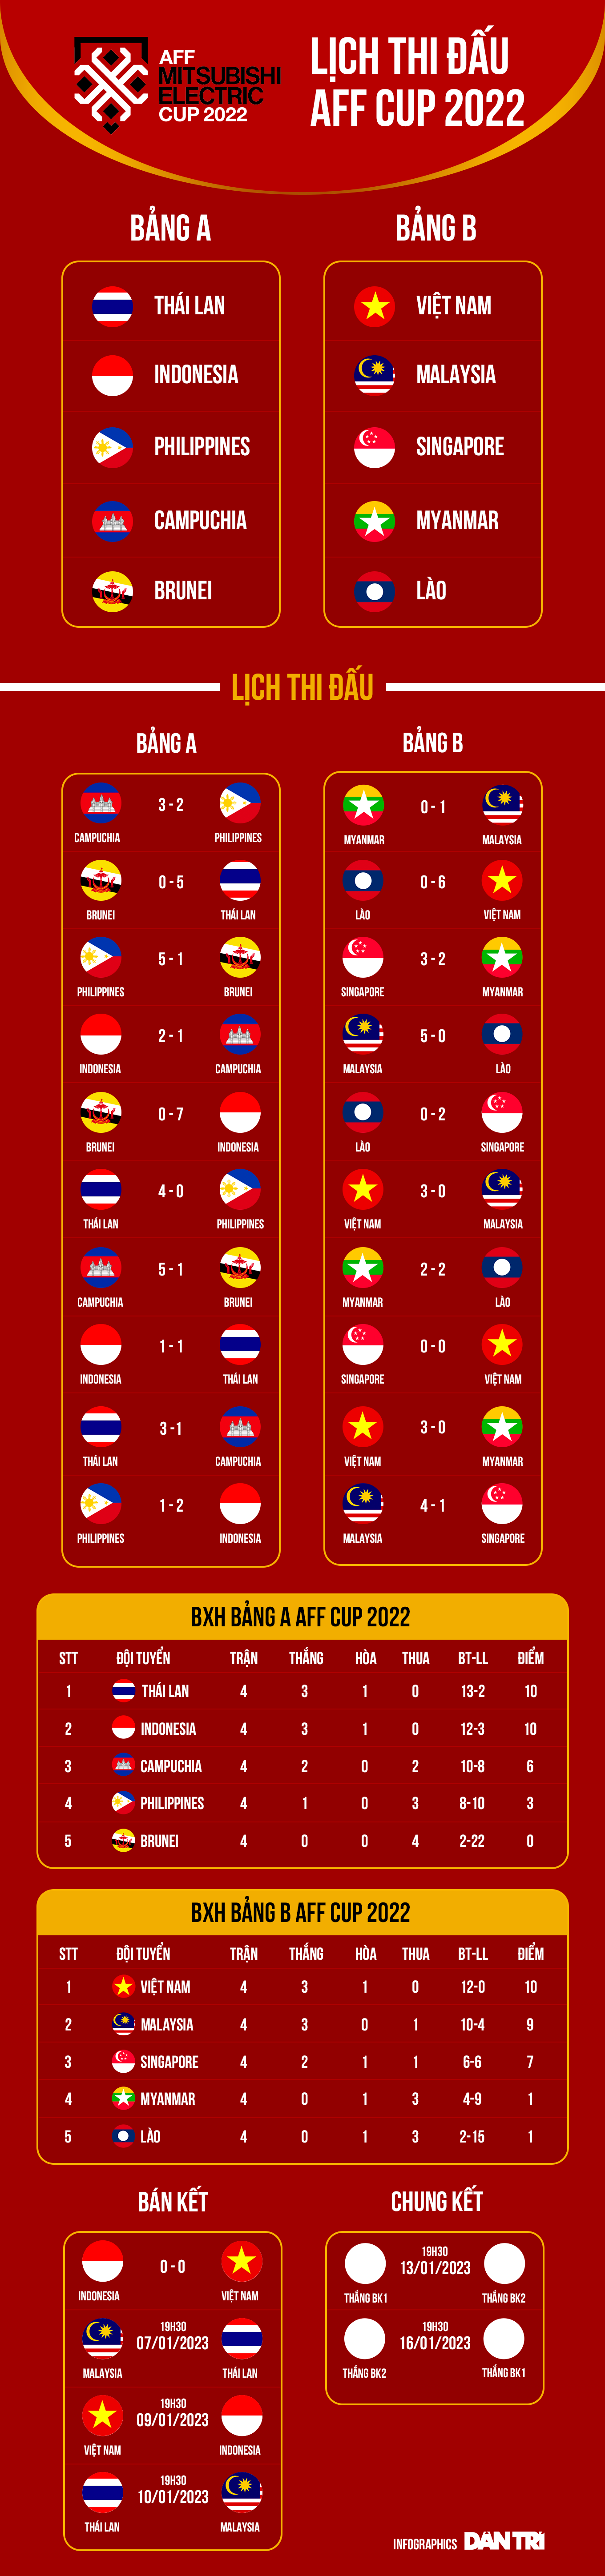 Indonesia có lợi thế hơn tuyển Việt Nam để giành vé vào chung kết - 2